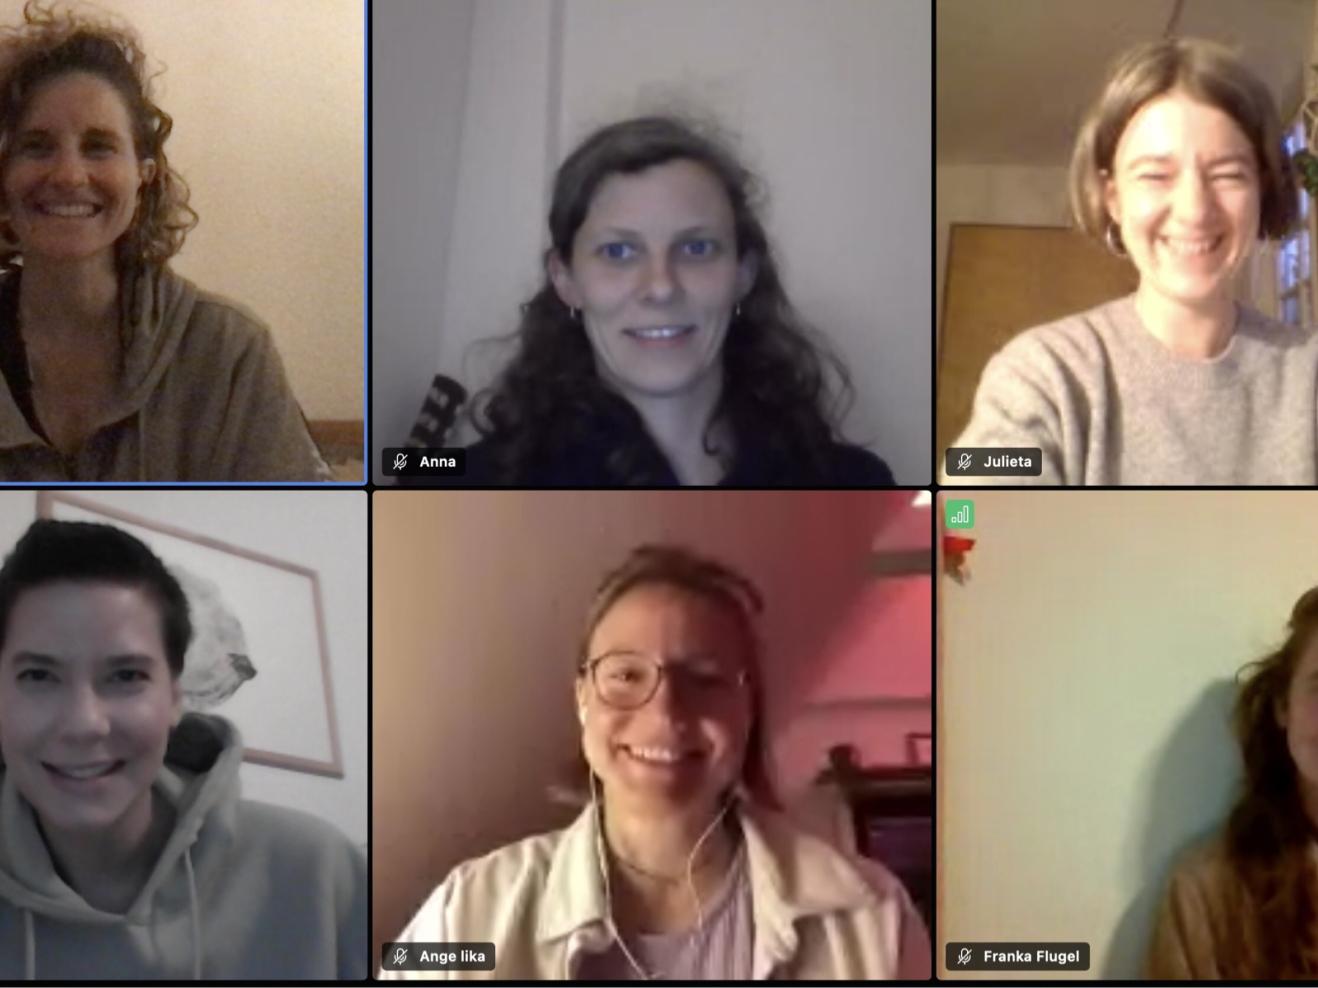 Portraits von sechs jungene Frauen in einer Videokonferenz